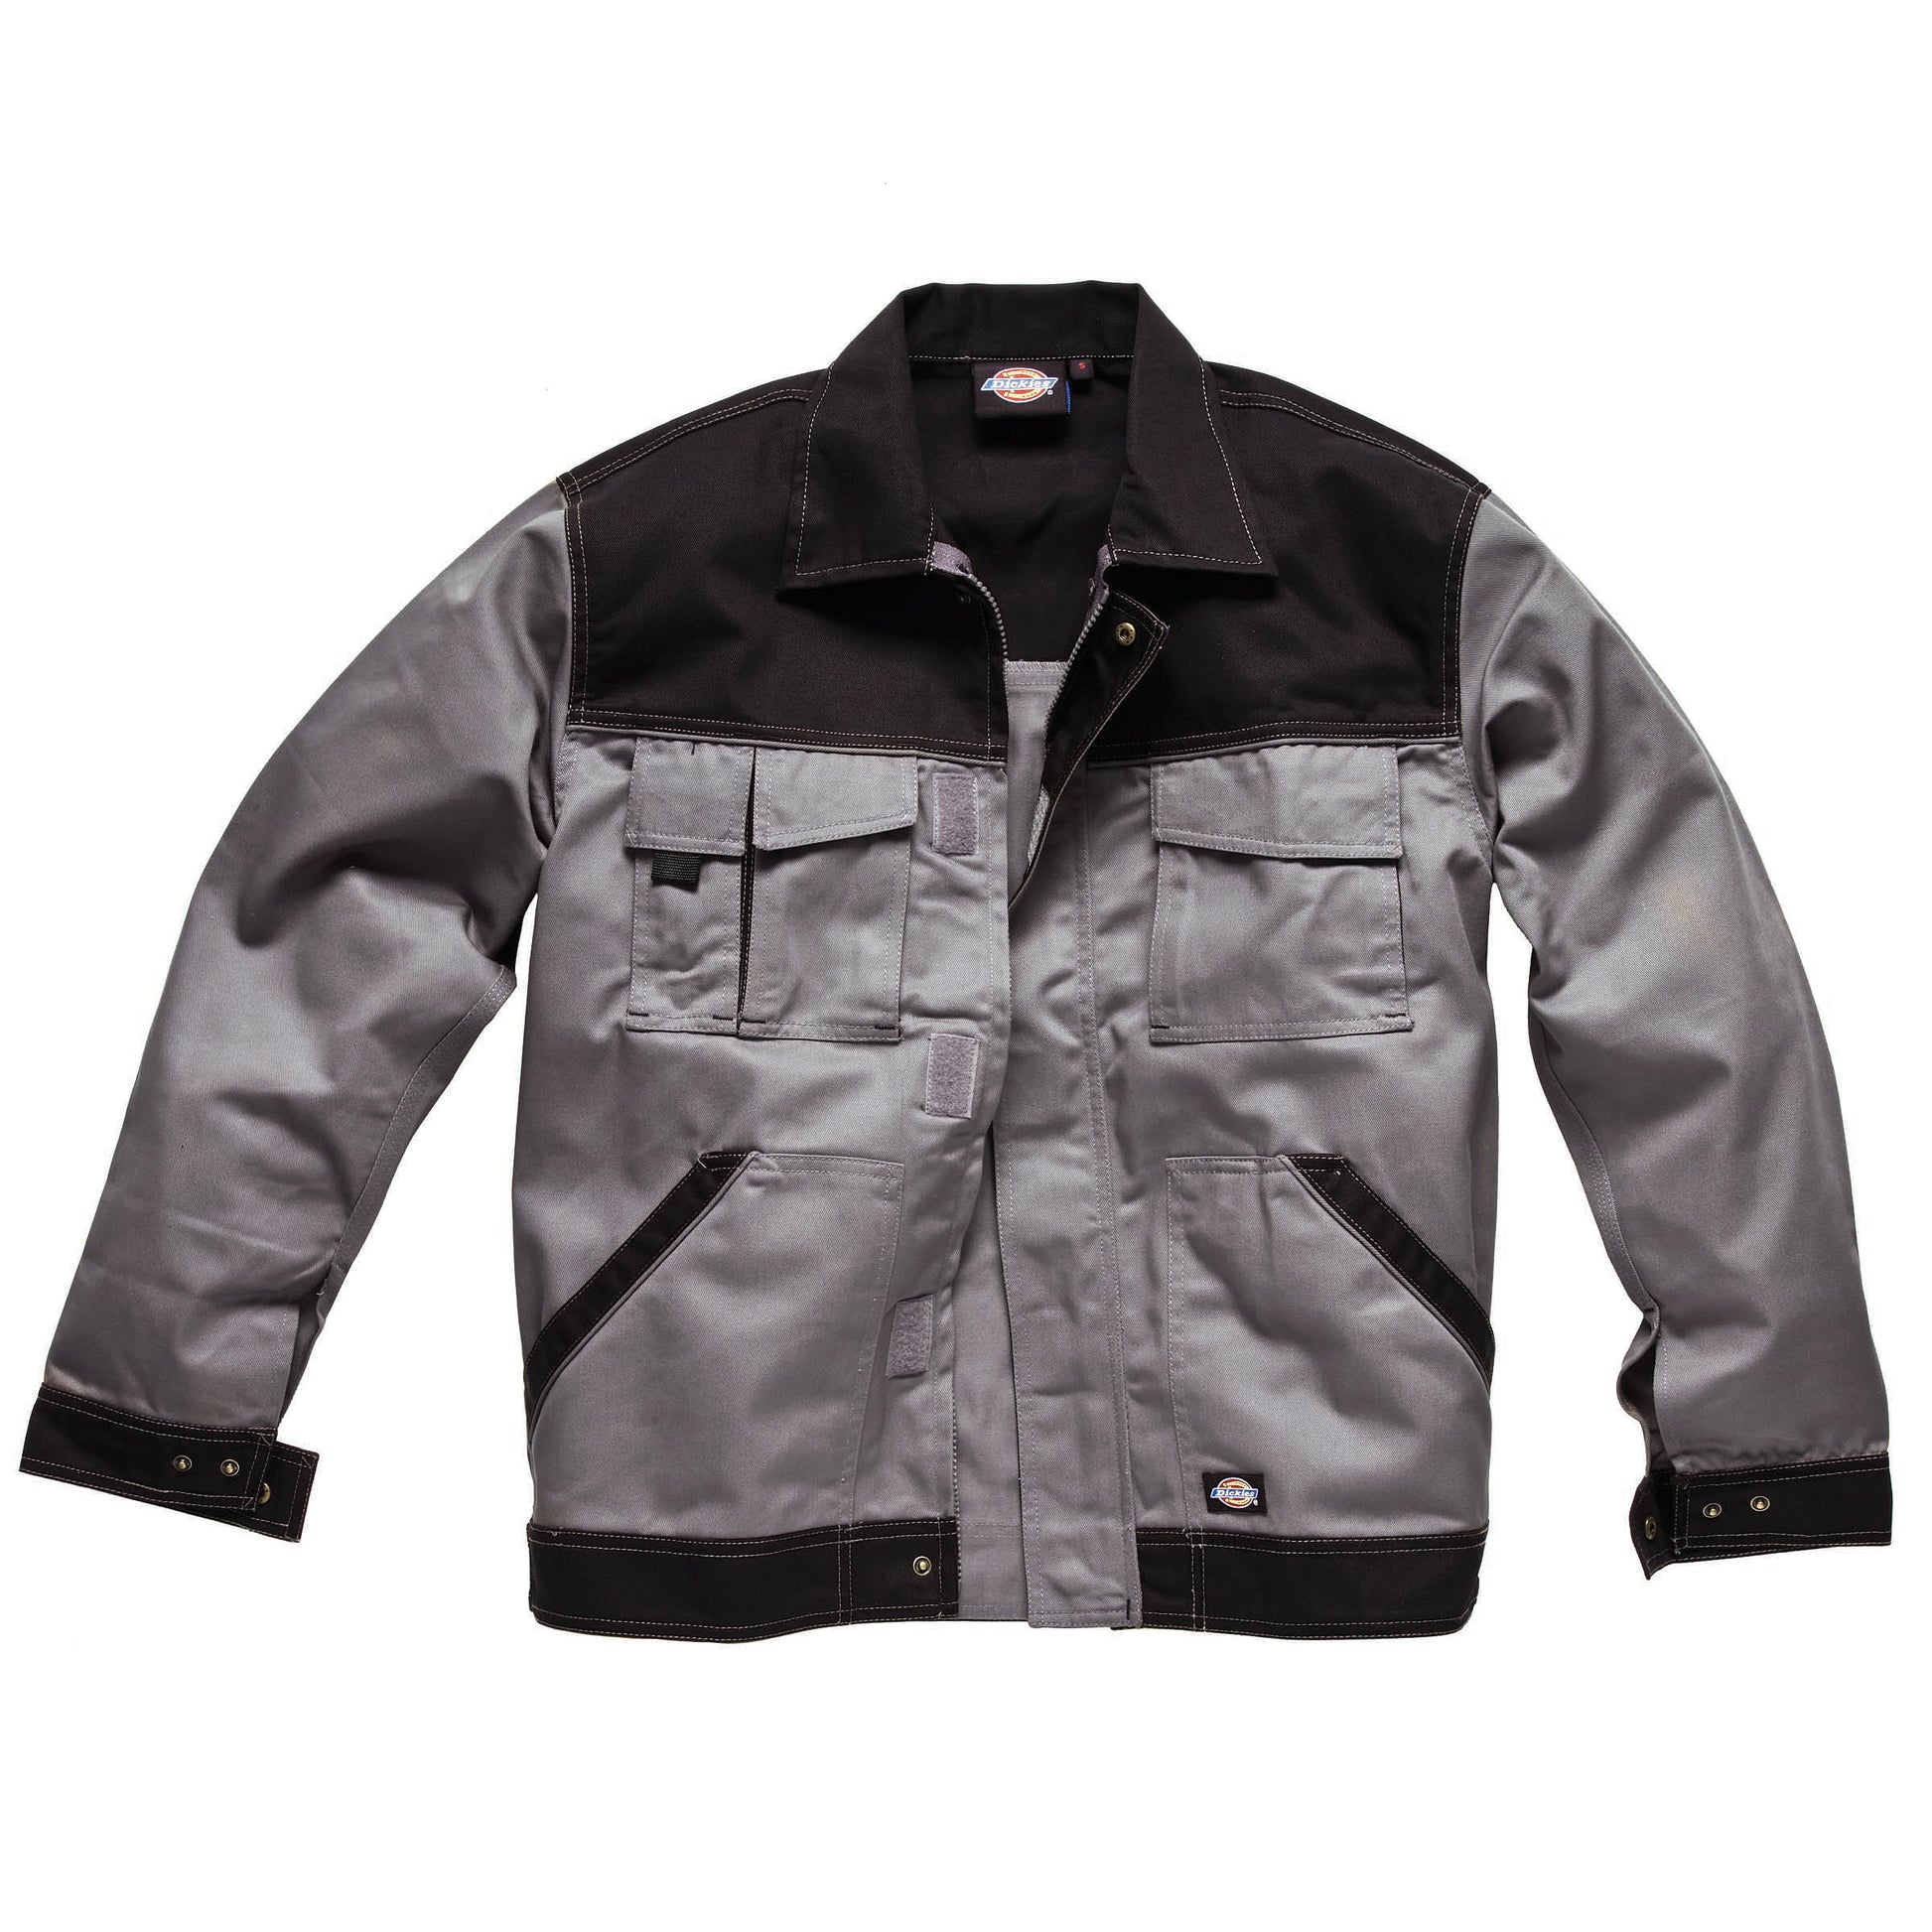 Dickies men's industry 300 two tone multi pocket jacket Black & Grey WD403